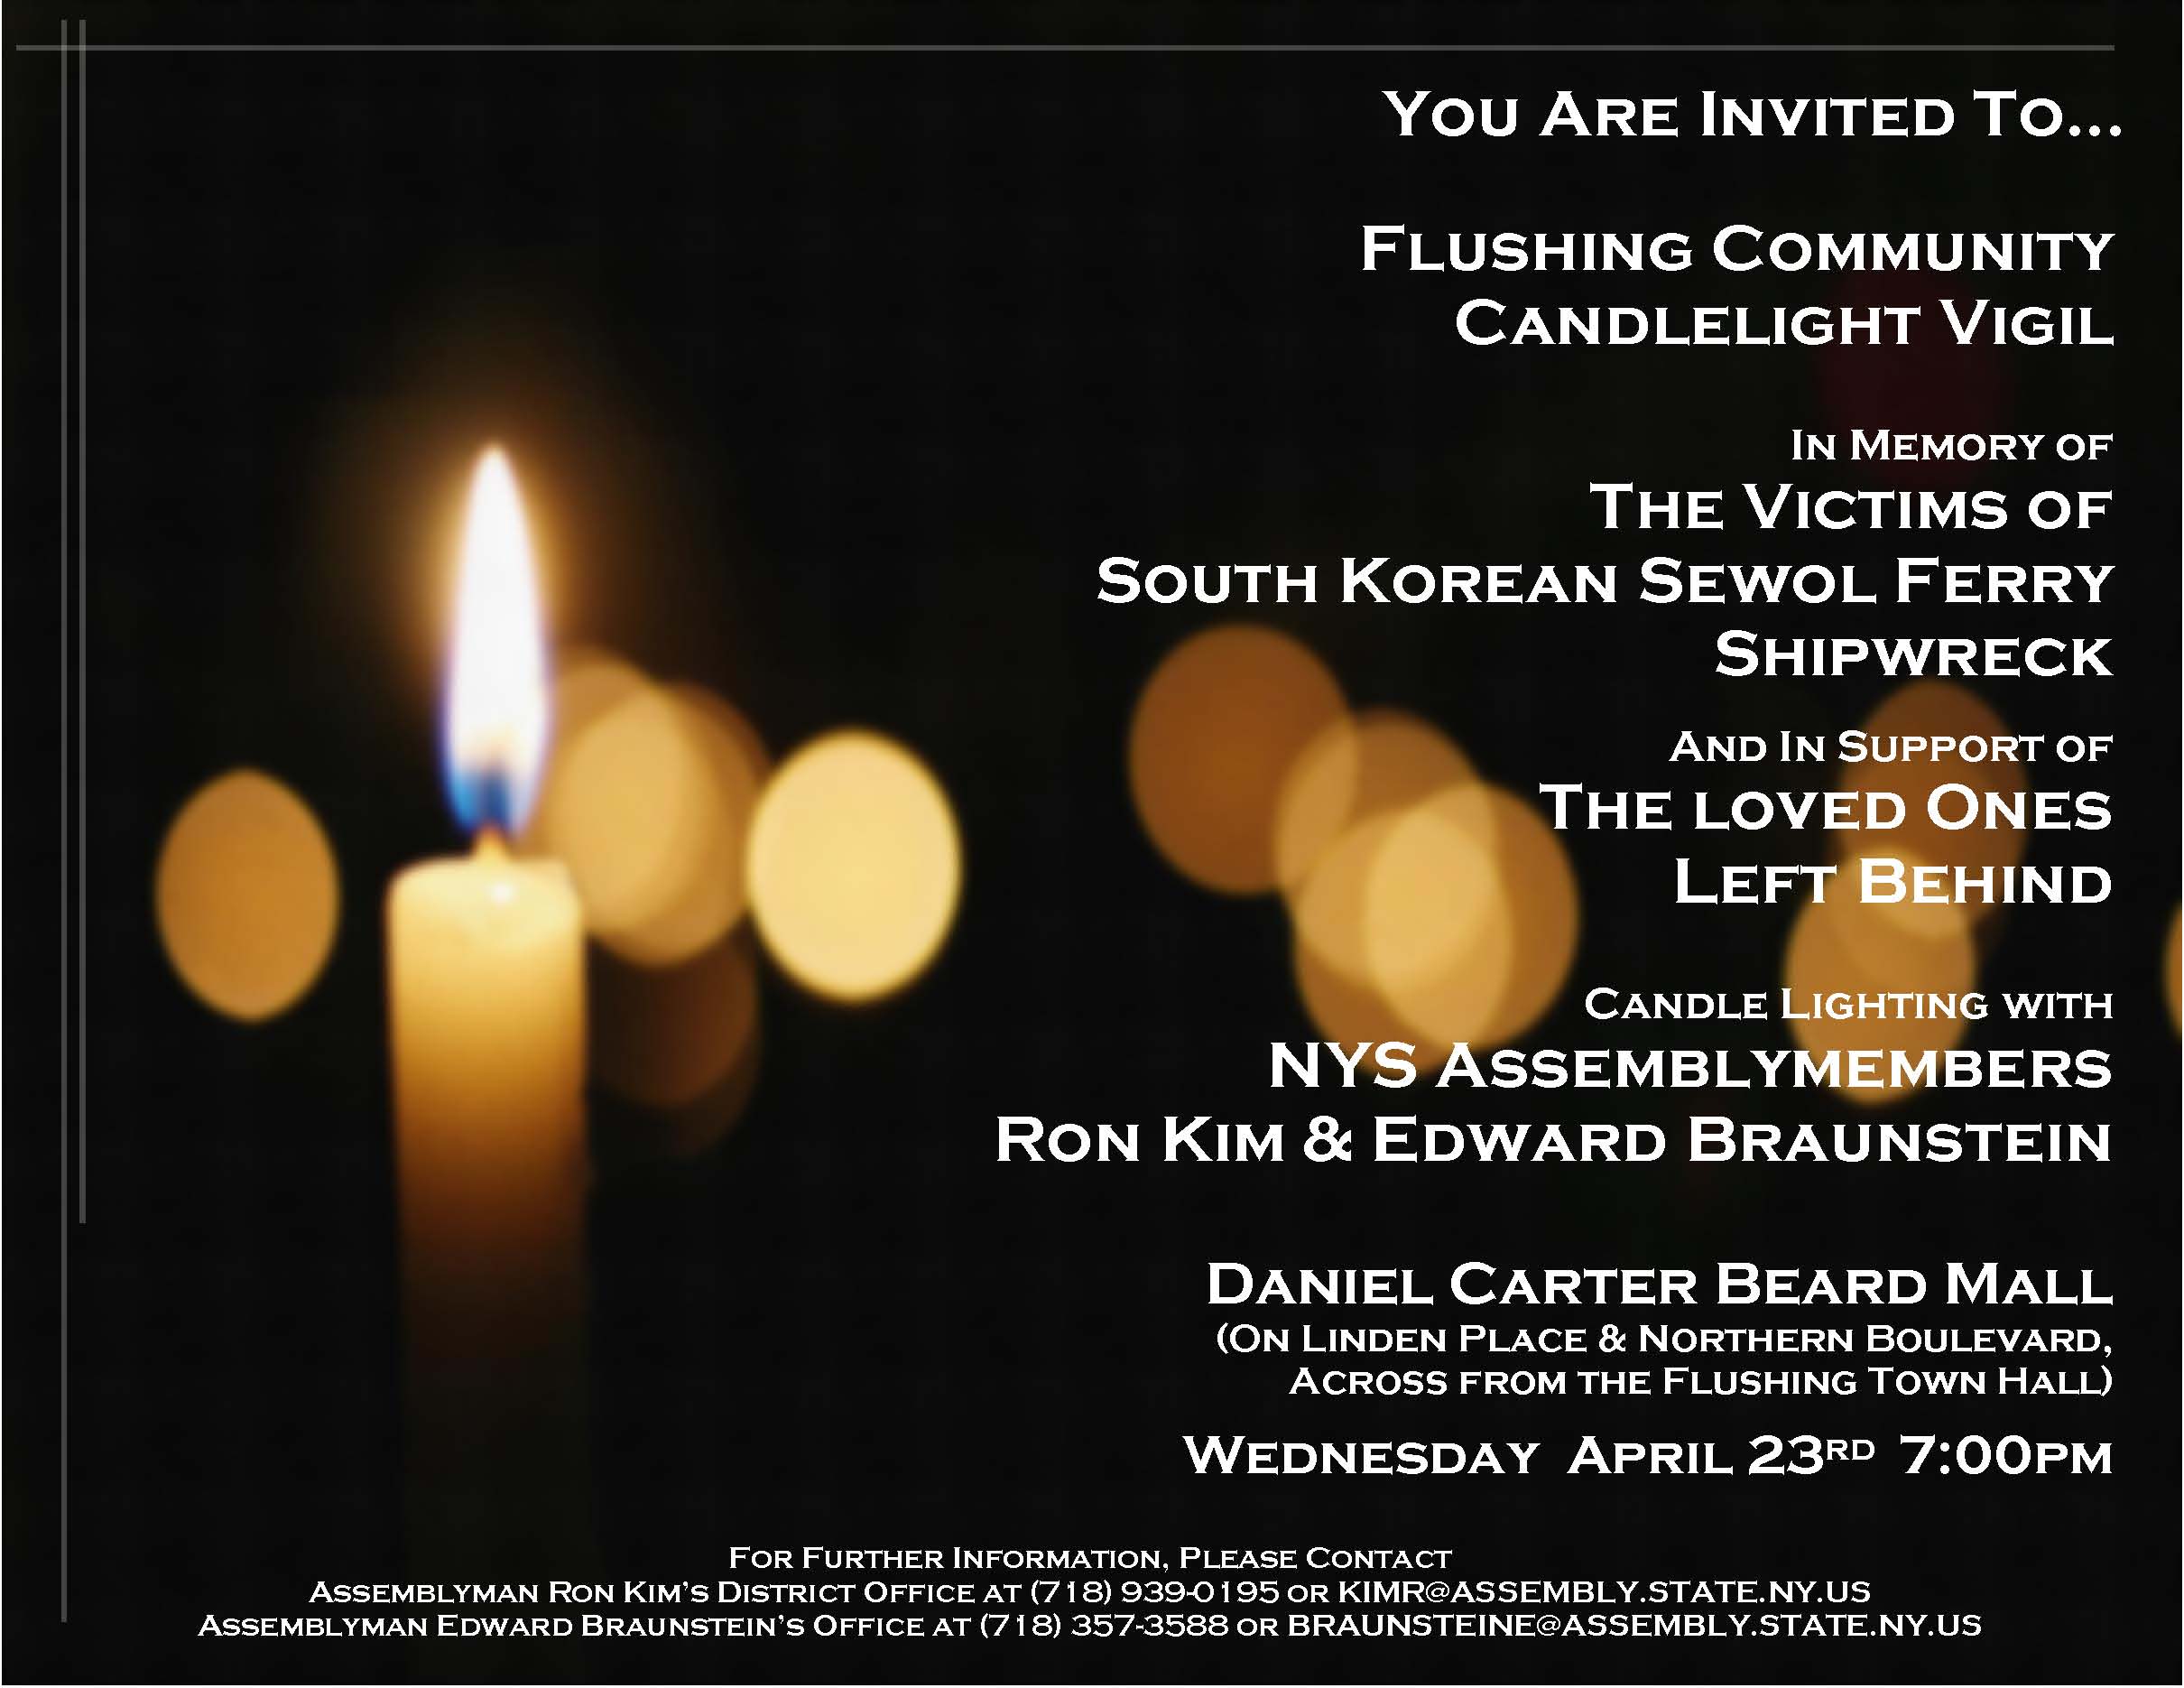 140421.Invite.Candlelight Vigil.jpg